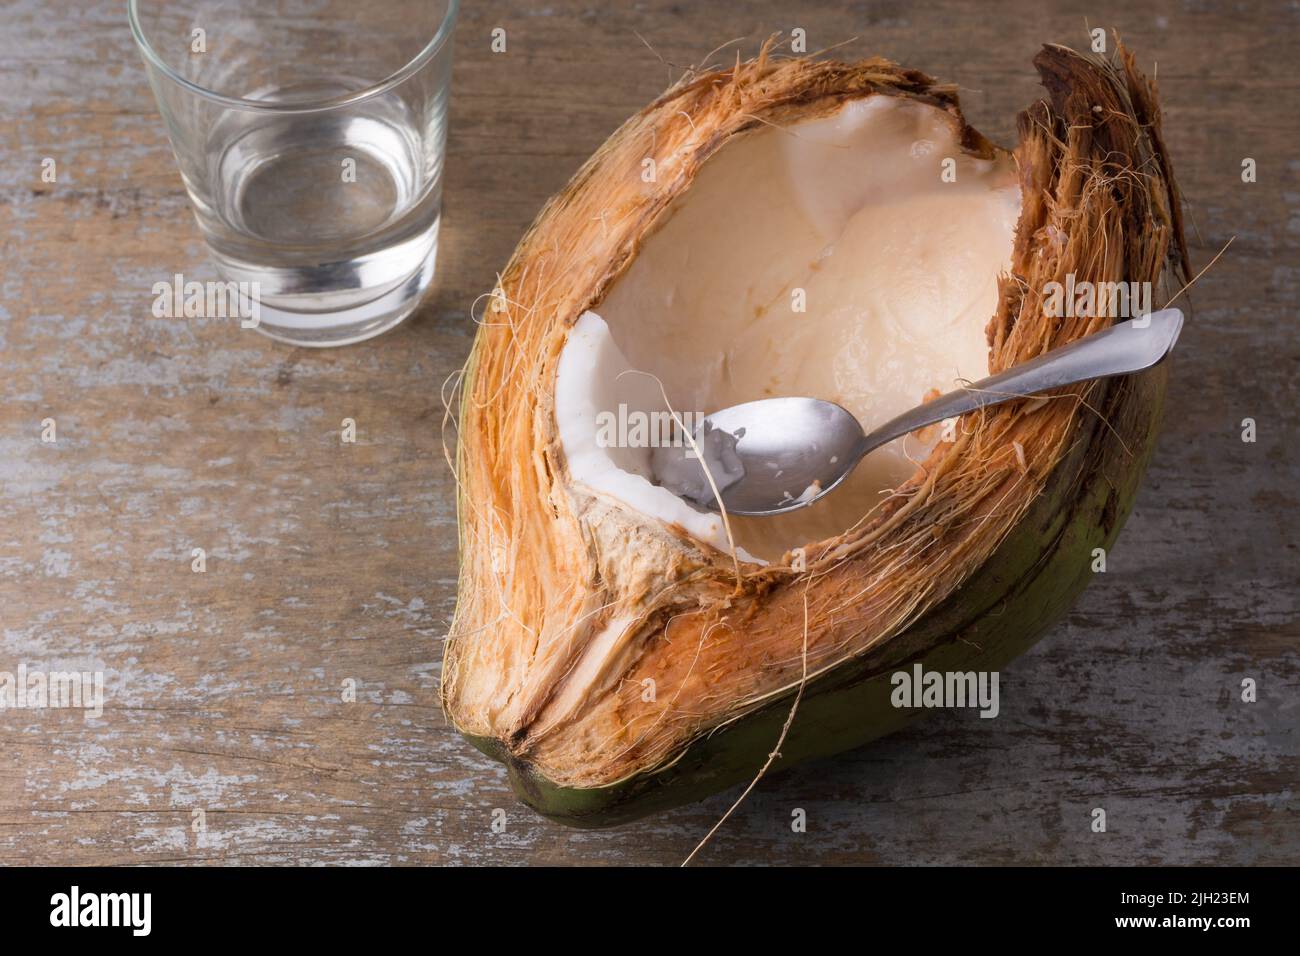 mangiare la carne di cocco giovane direttamente dal guscio con un cucchiaio, carne bianca di frutta tropicale sana su un tavolo di legno, spazio per il testo Foto Stock